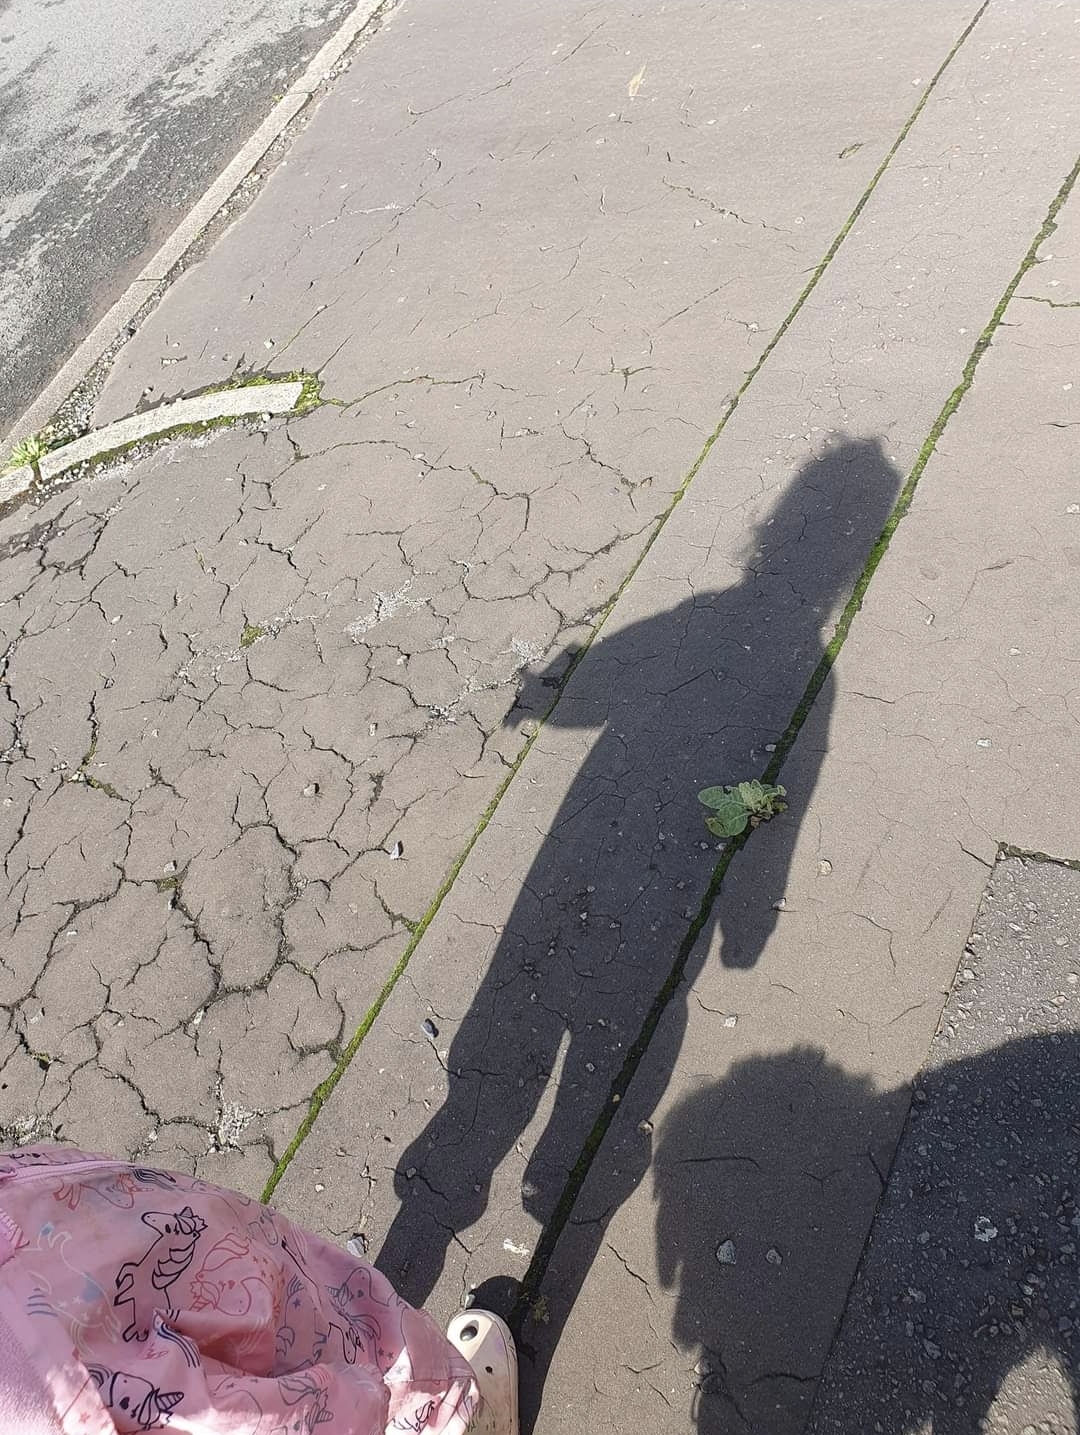 a shadow of a person on a sidewalk